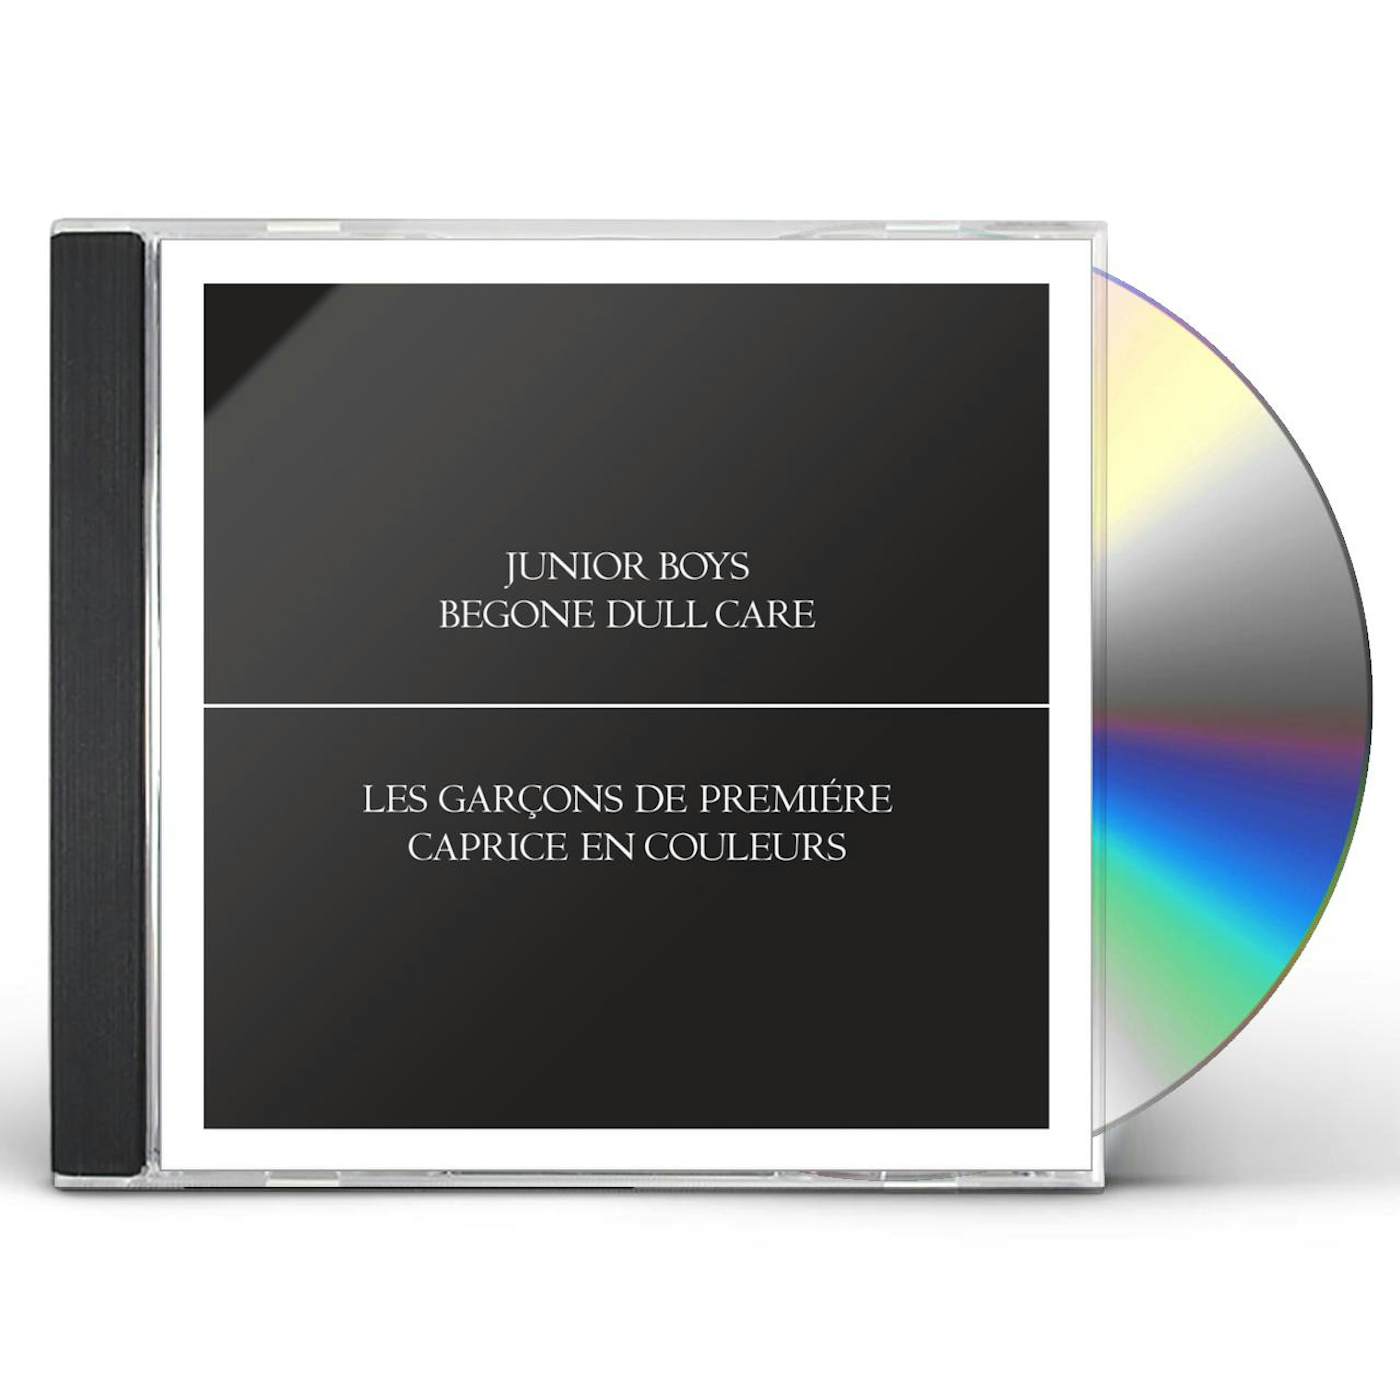 Junior Boys BEGONE DULL CARE CD